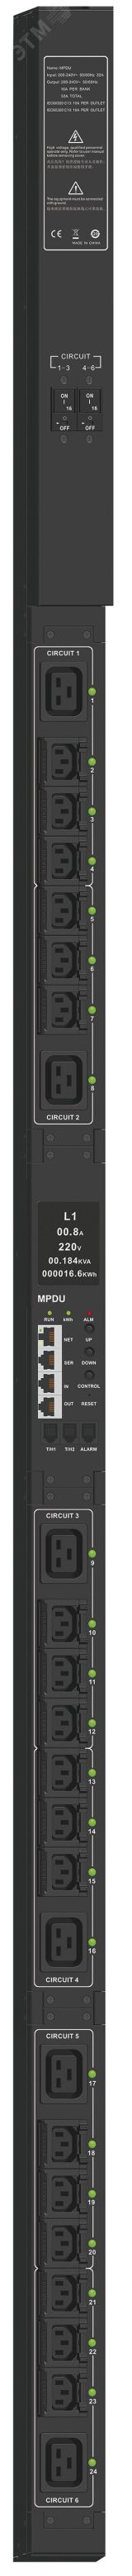 Блок распределения питания CONTROL PDU PV1312 с мониторингом и управлением 1Ф 32А 18С13 6С20 CN-PM23-24-18C13-06C19-41 ITK